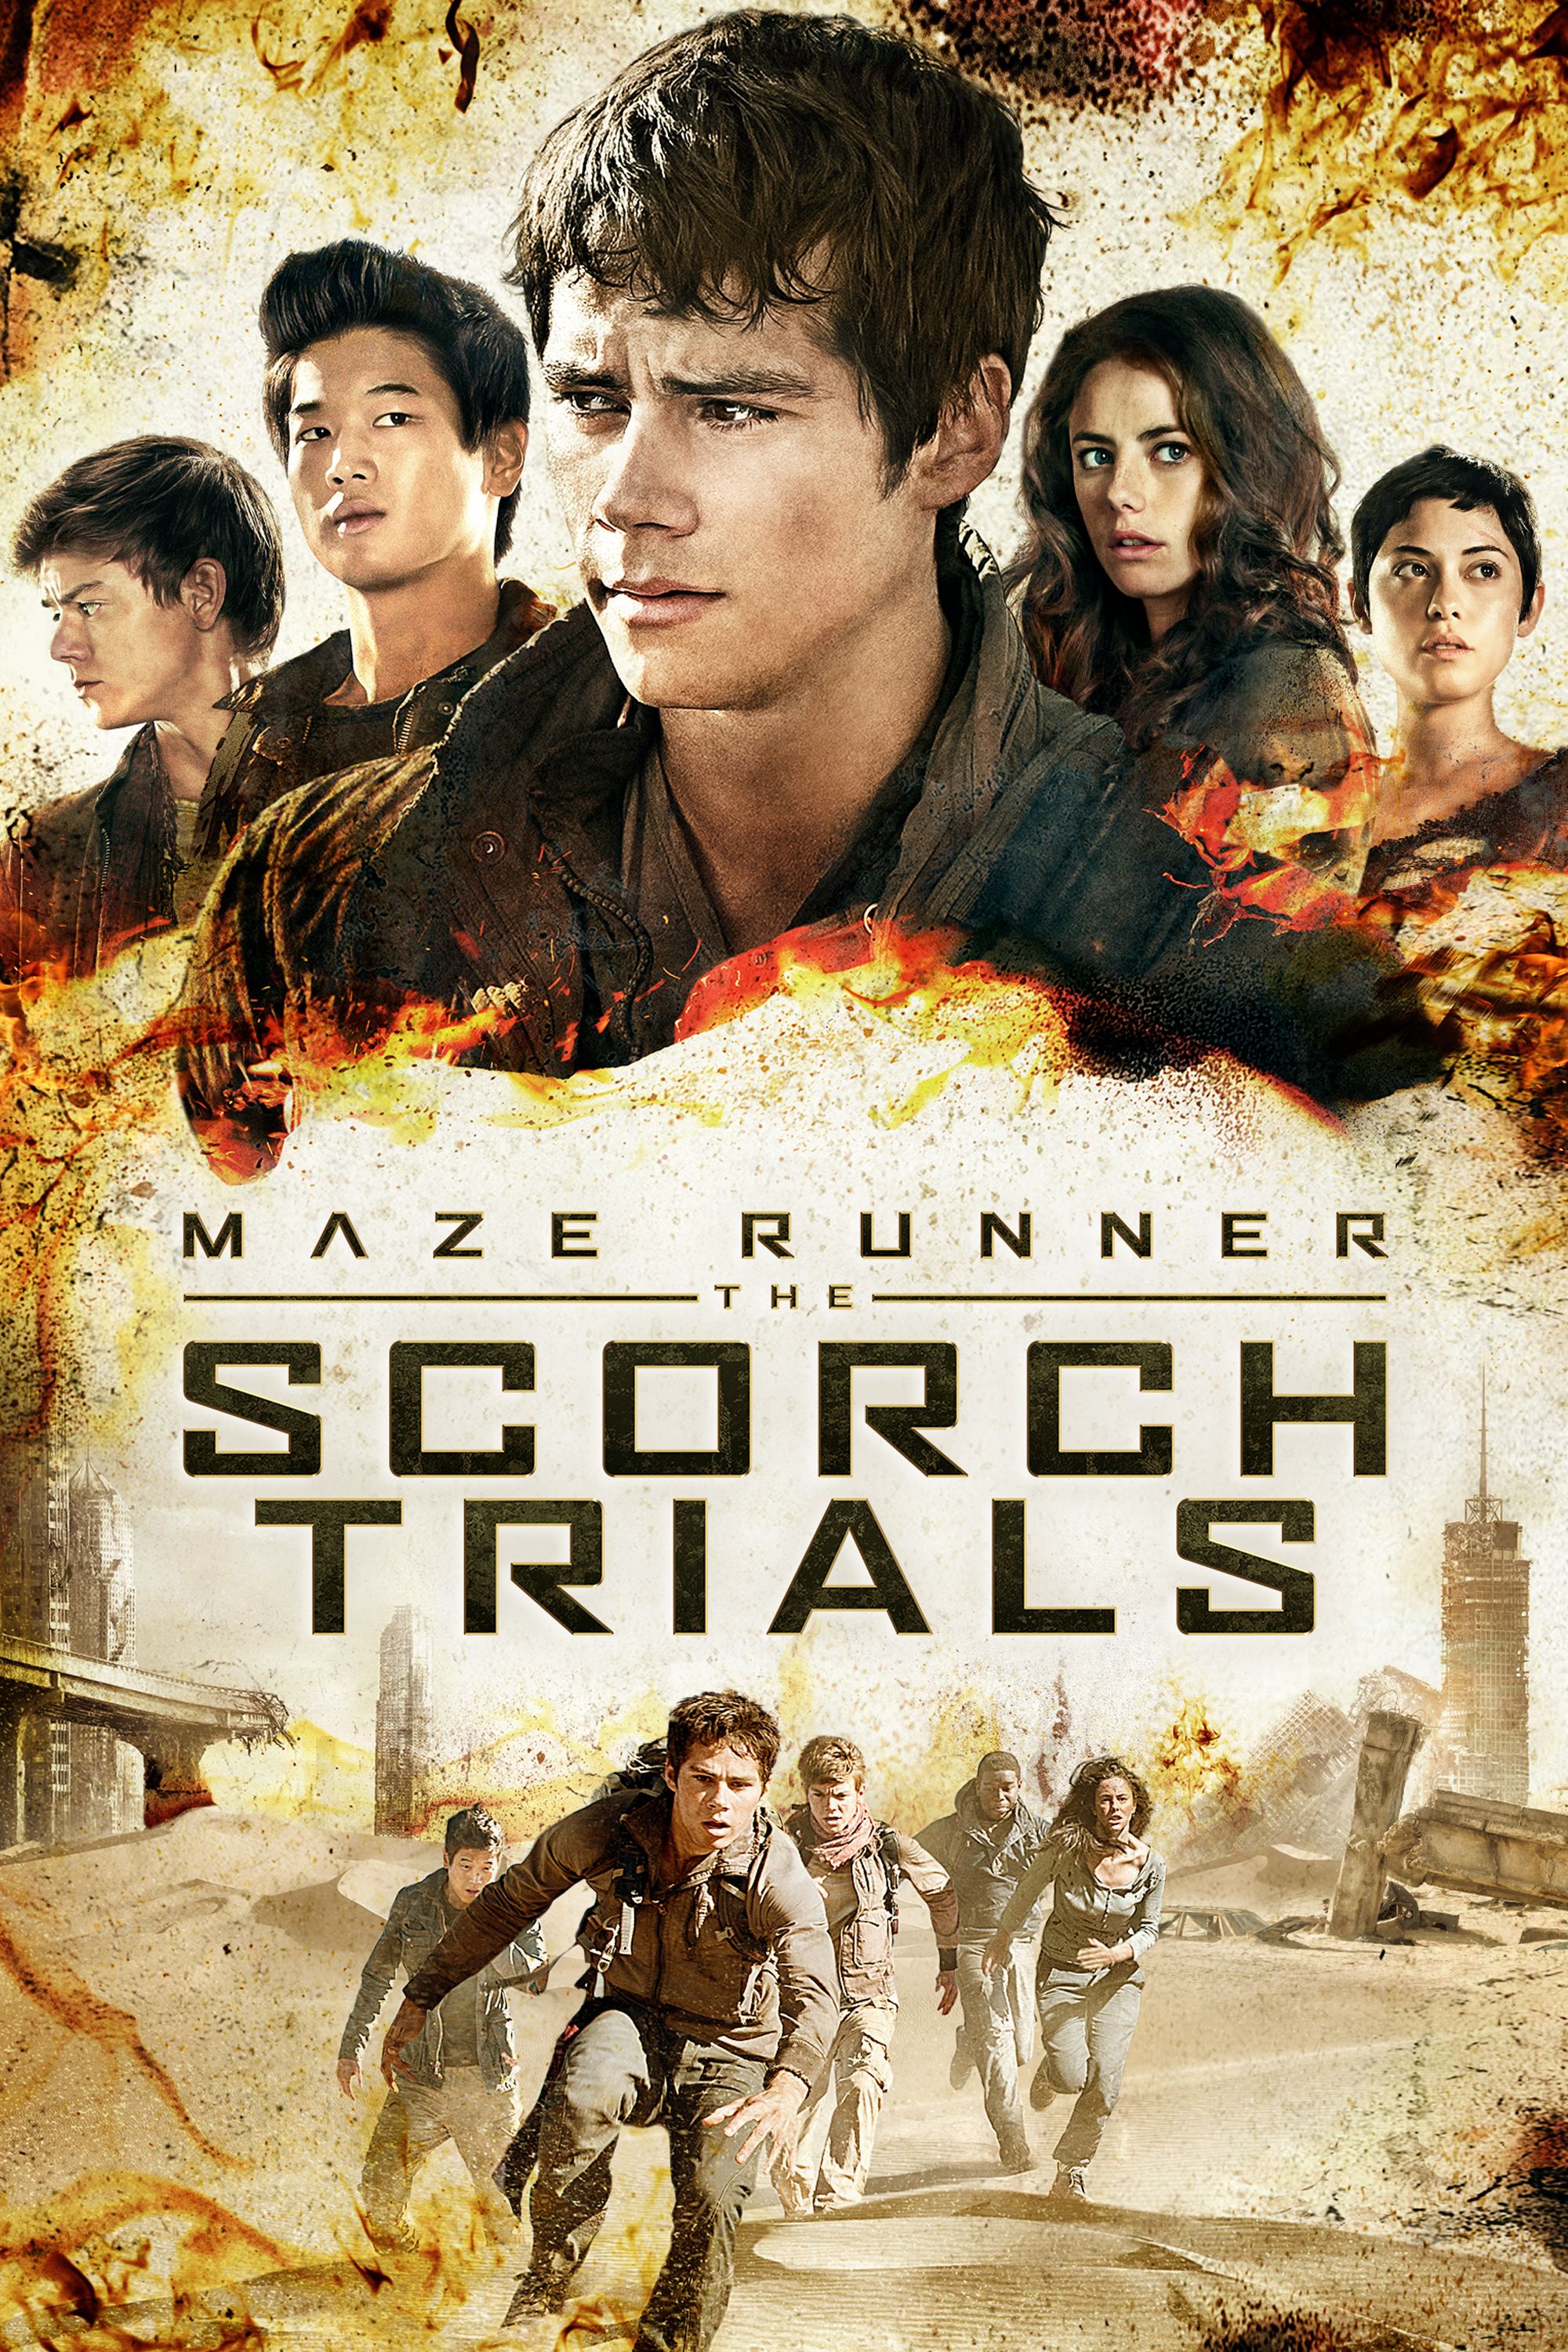 Maze runner scorch trials online free